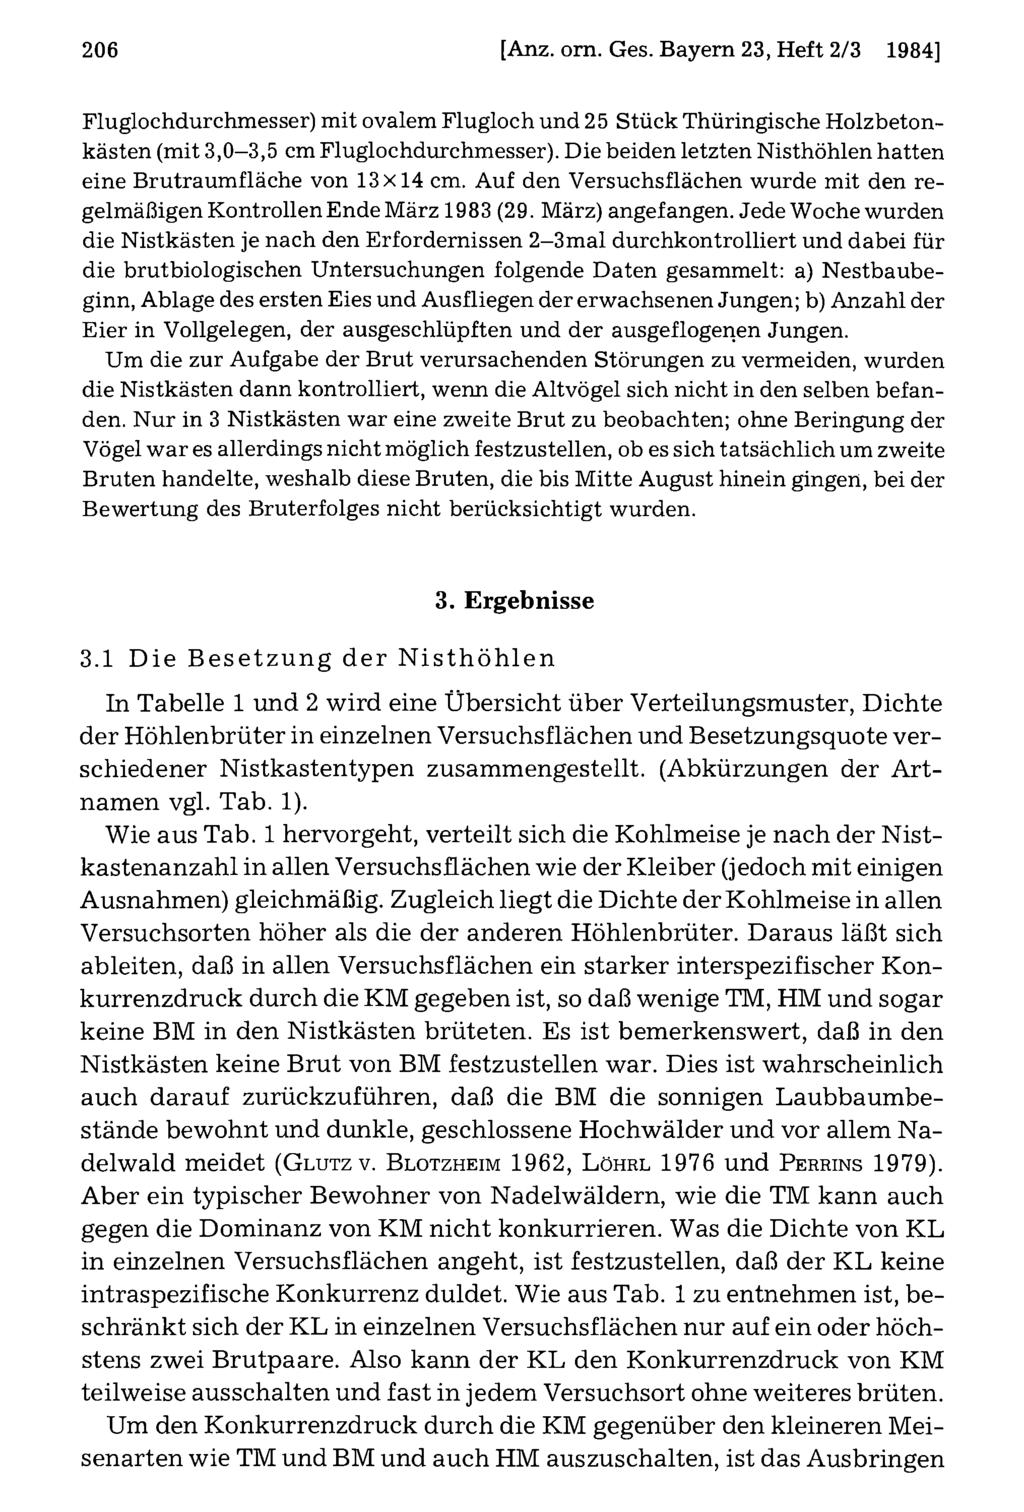 206 Ornithologische Gesellschaft Bayern, [Anz. download om unter. Ges. www.biologiezentrum.